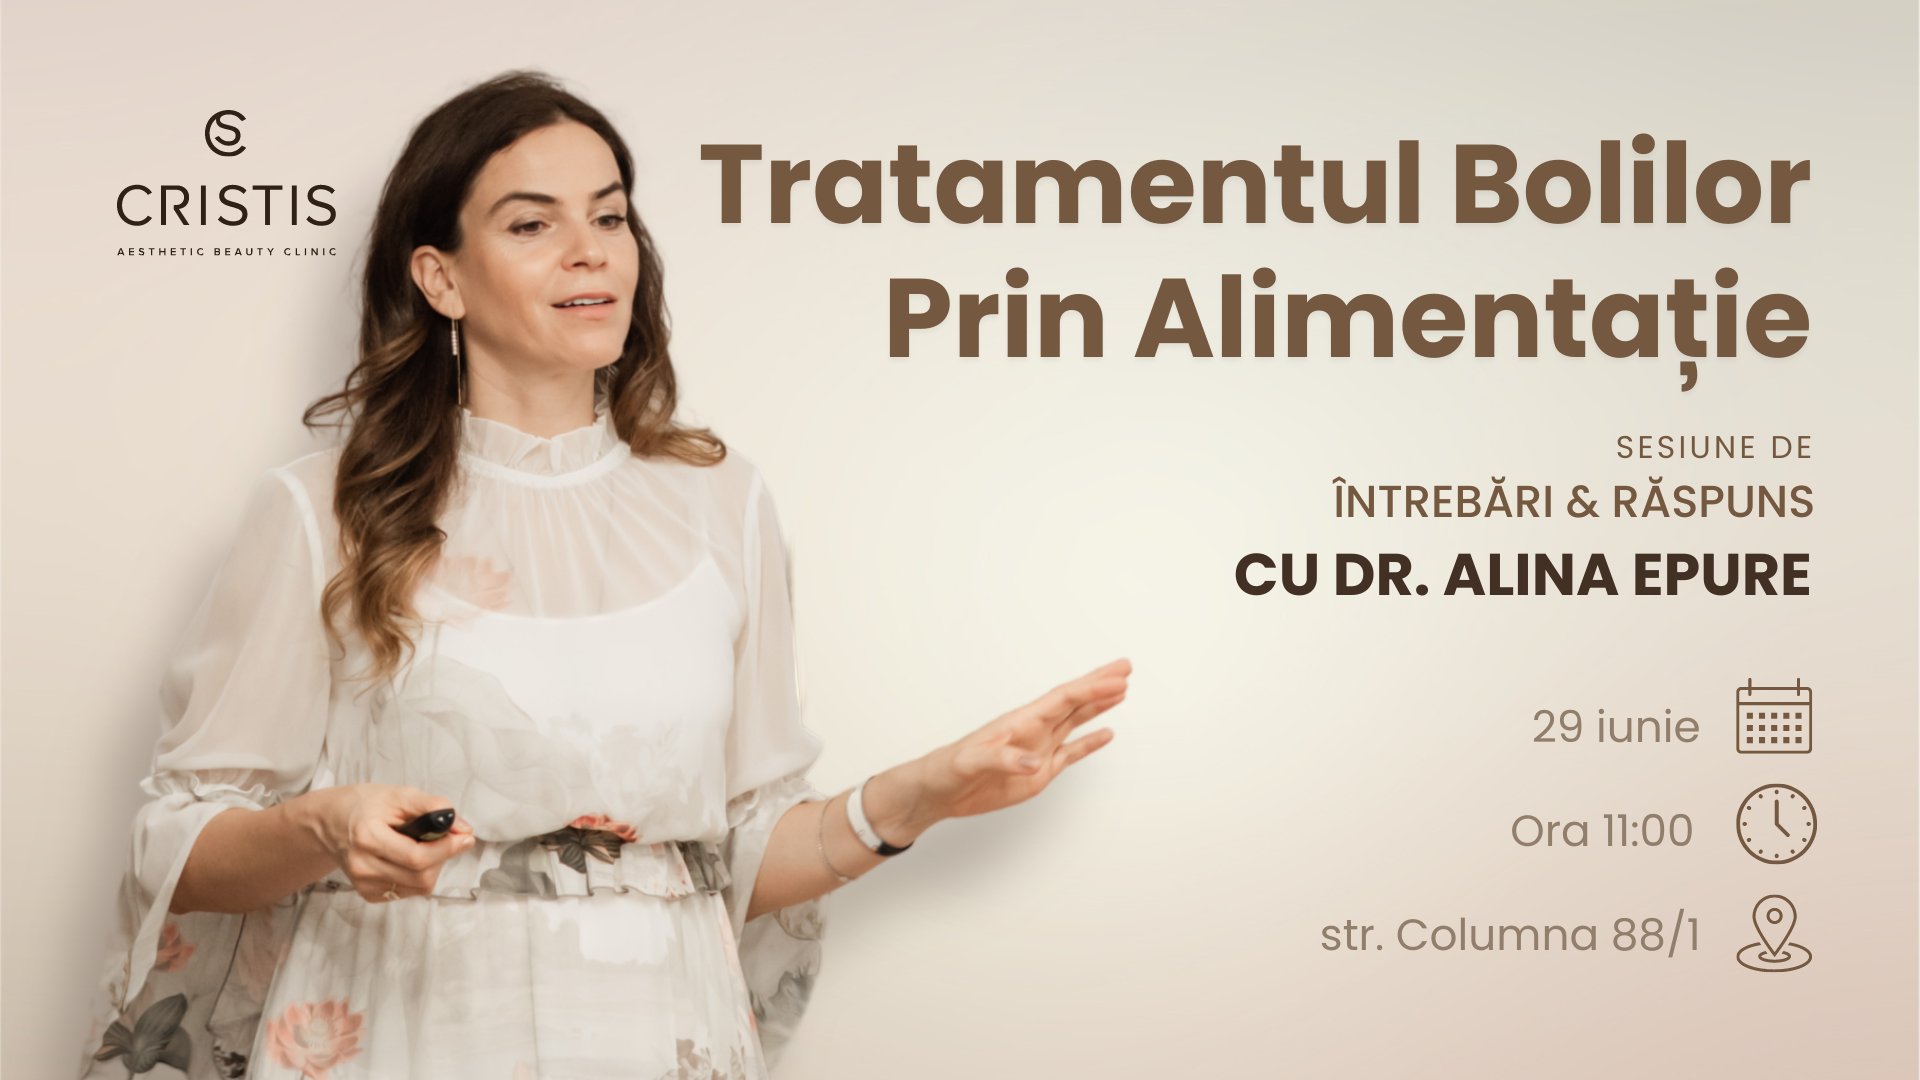 Tratamentul Bolilor Prin Alimentație cu Dr. Alina Epure